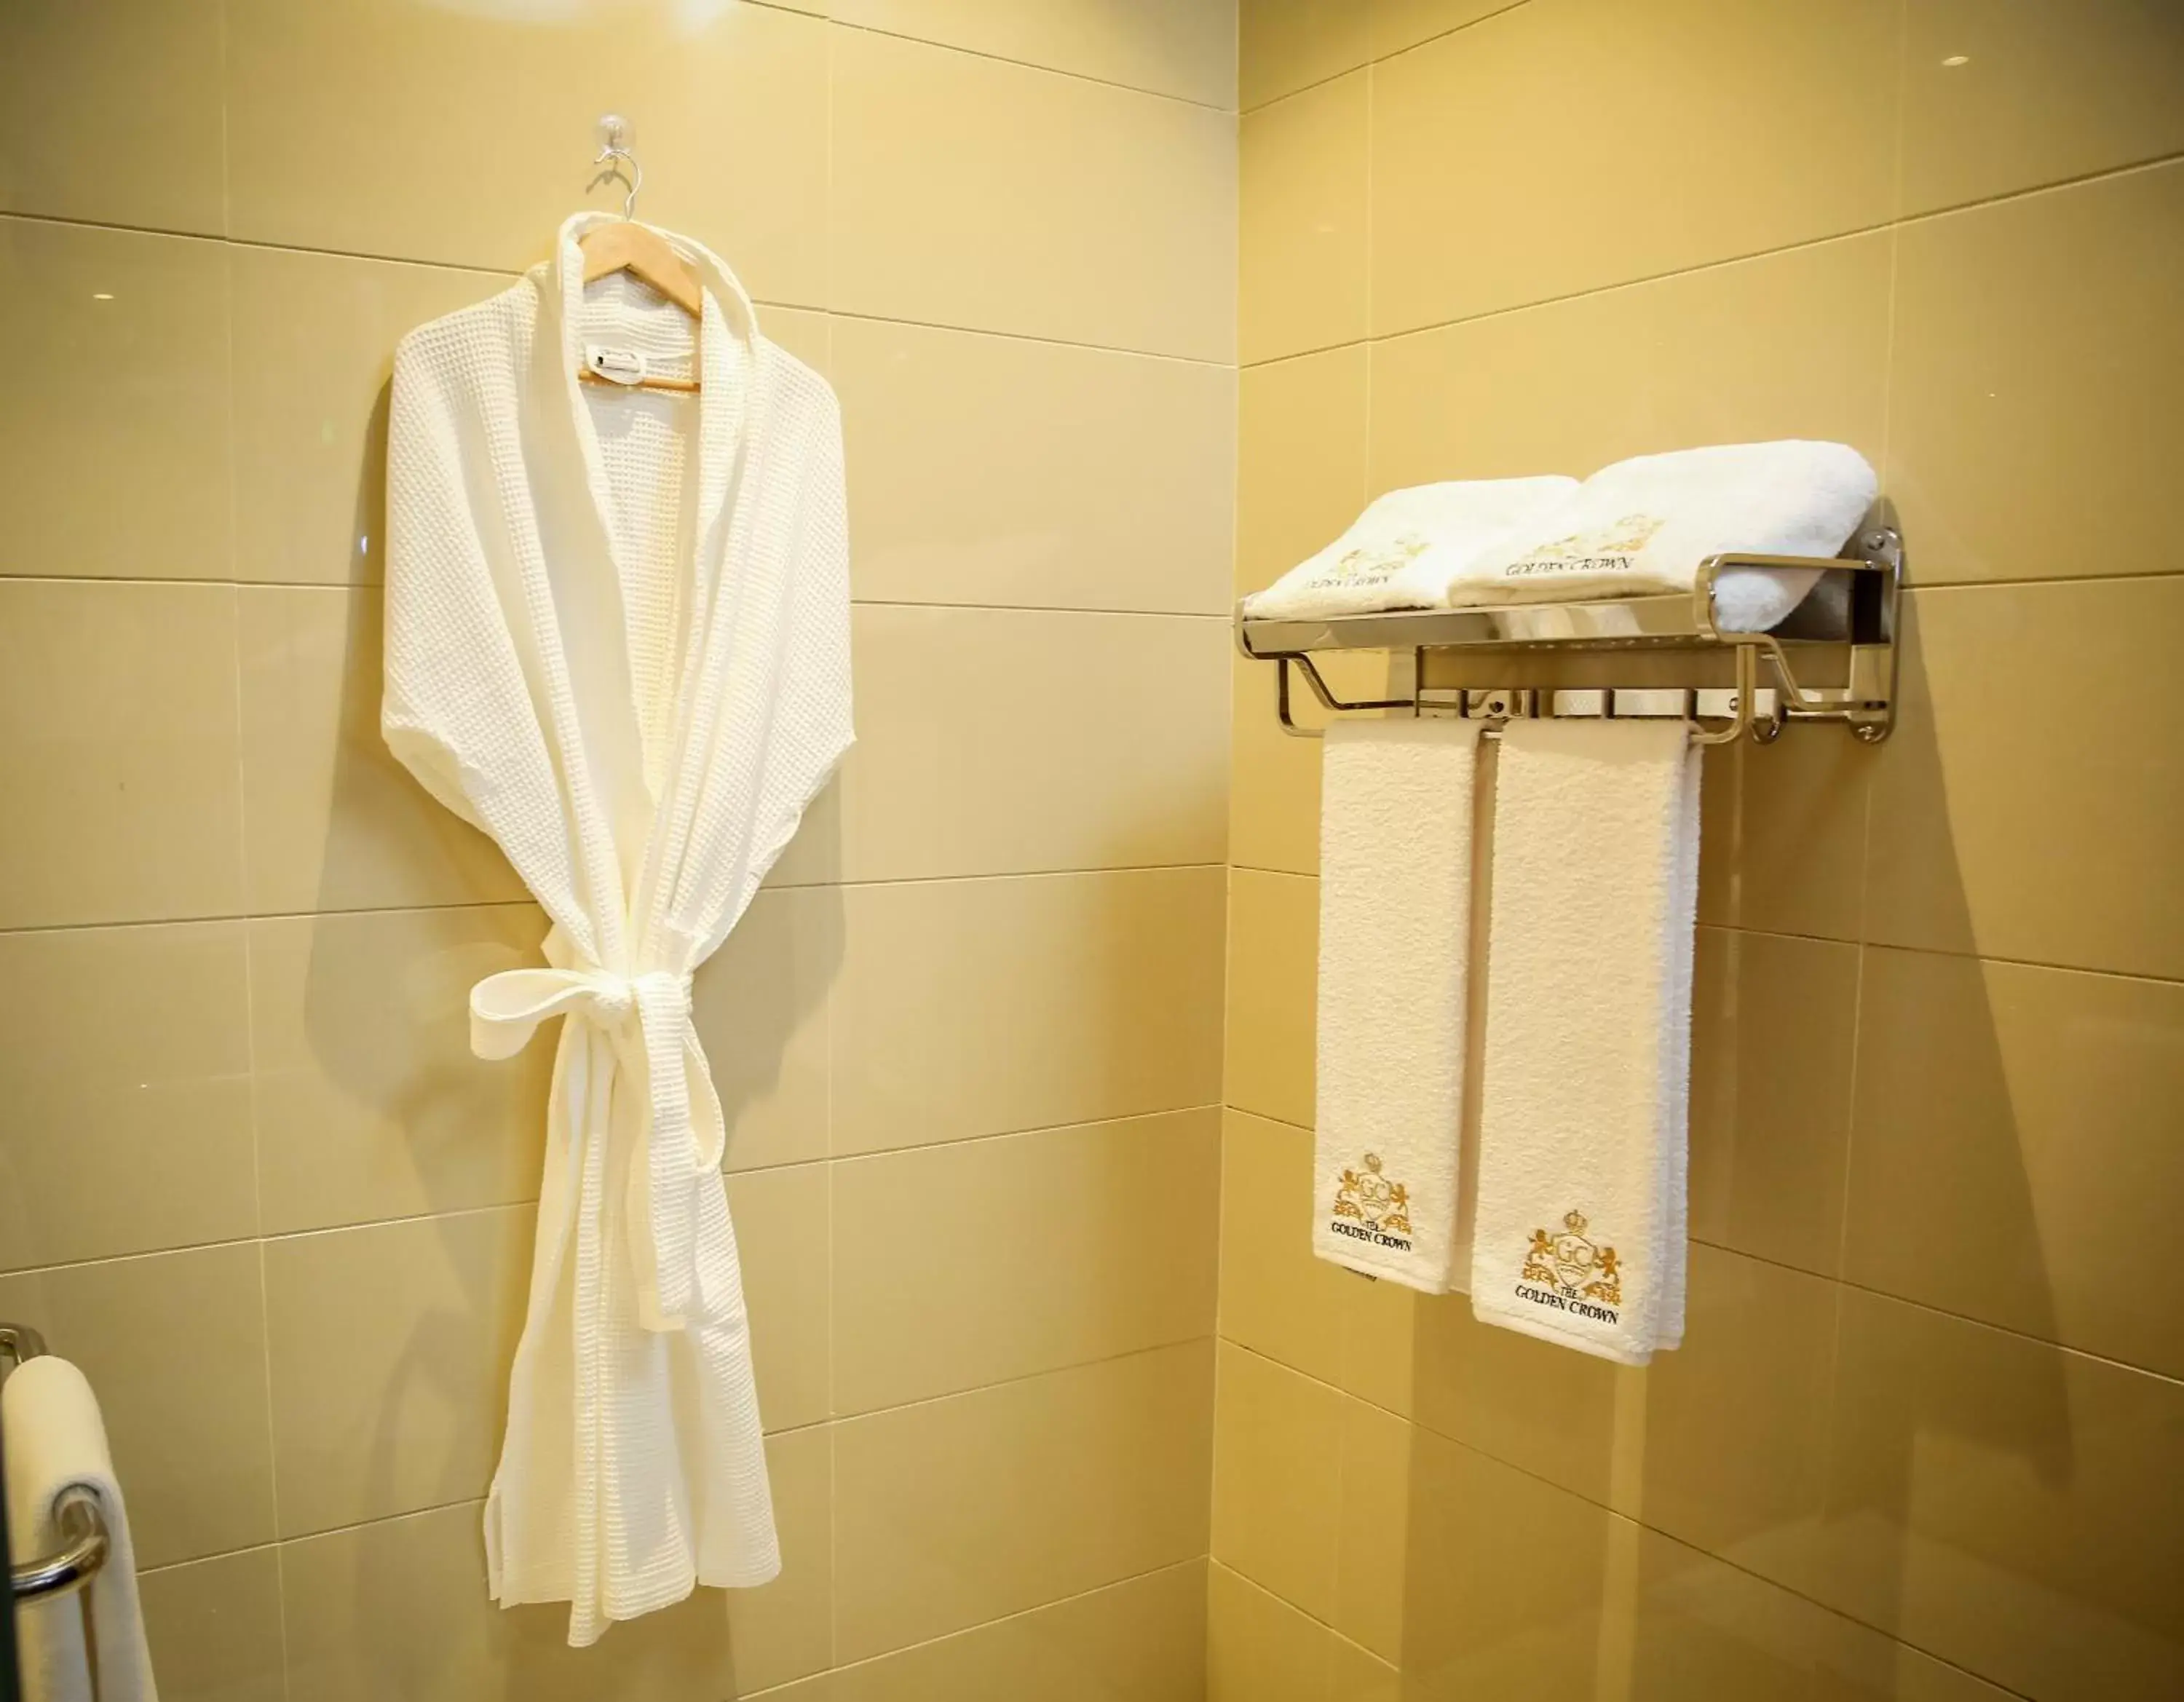 Bathroom in The Golden Crown Hotel